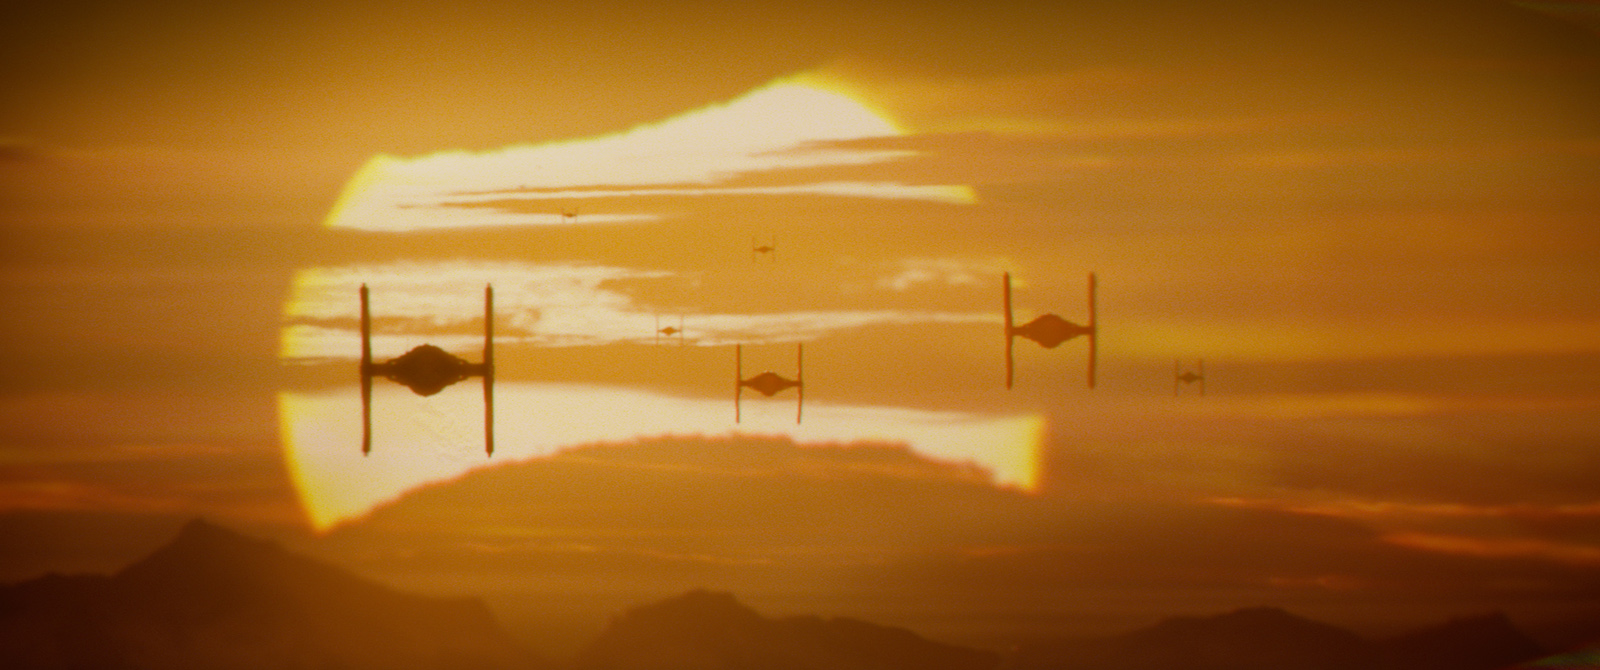 Image du film Star Wars VII